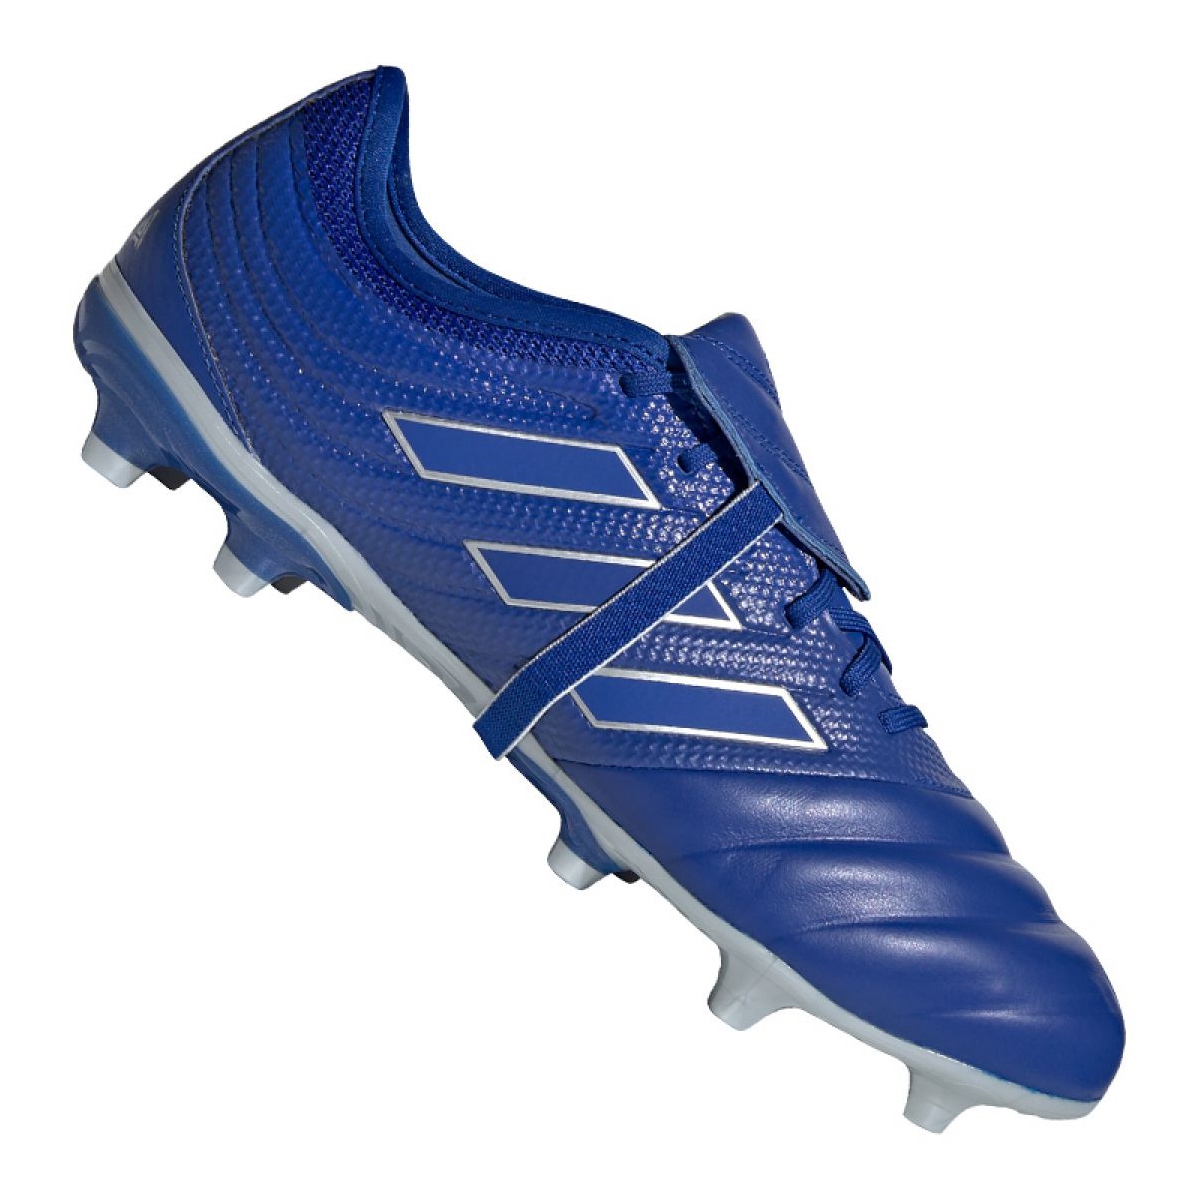 Buty piłkarskie adidas Copa Gloro 20.2 Fg M EH1503 niebieskie wielokolorowe